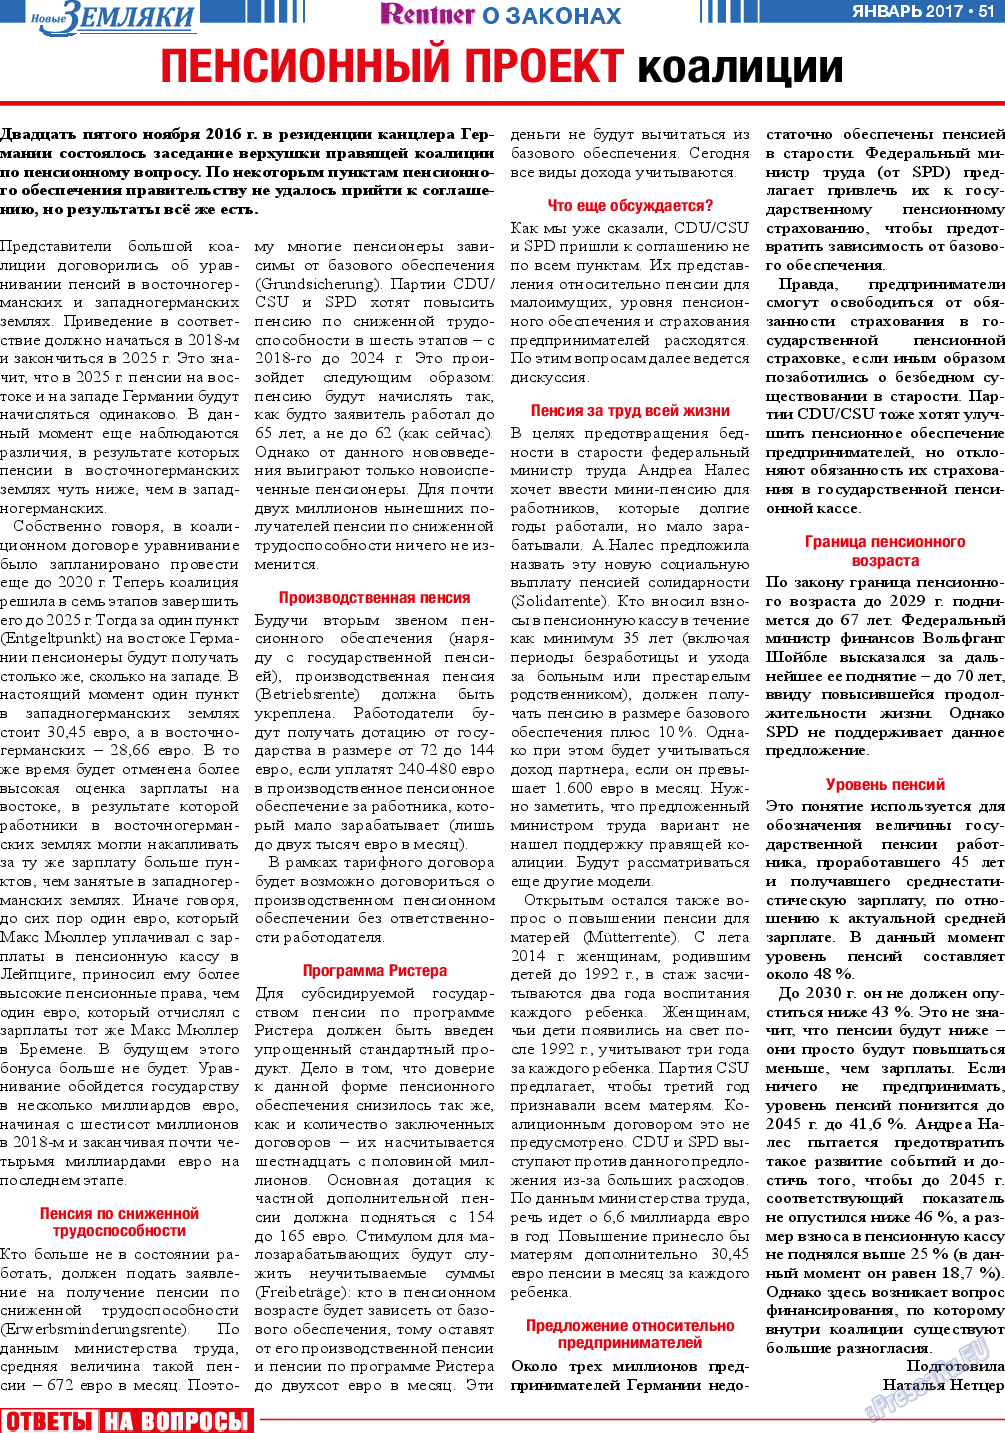 Новые Земляки, газета. 2017 №1 стр.51